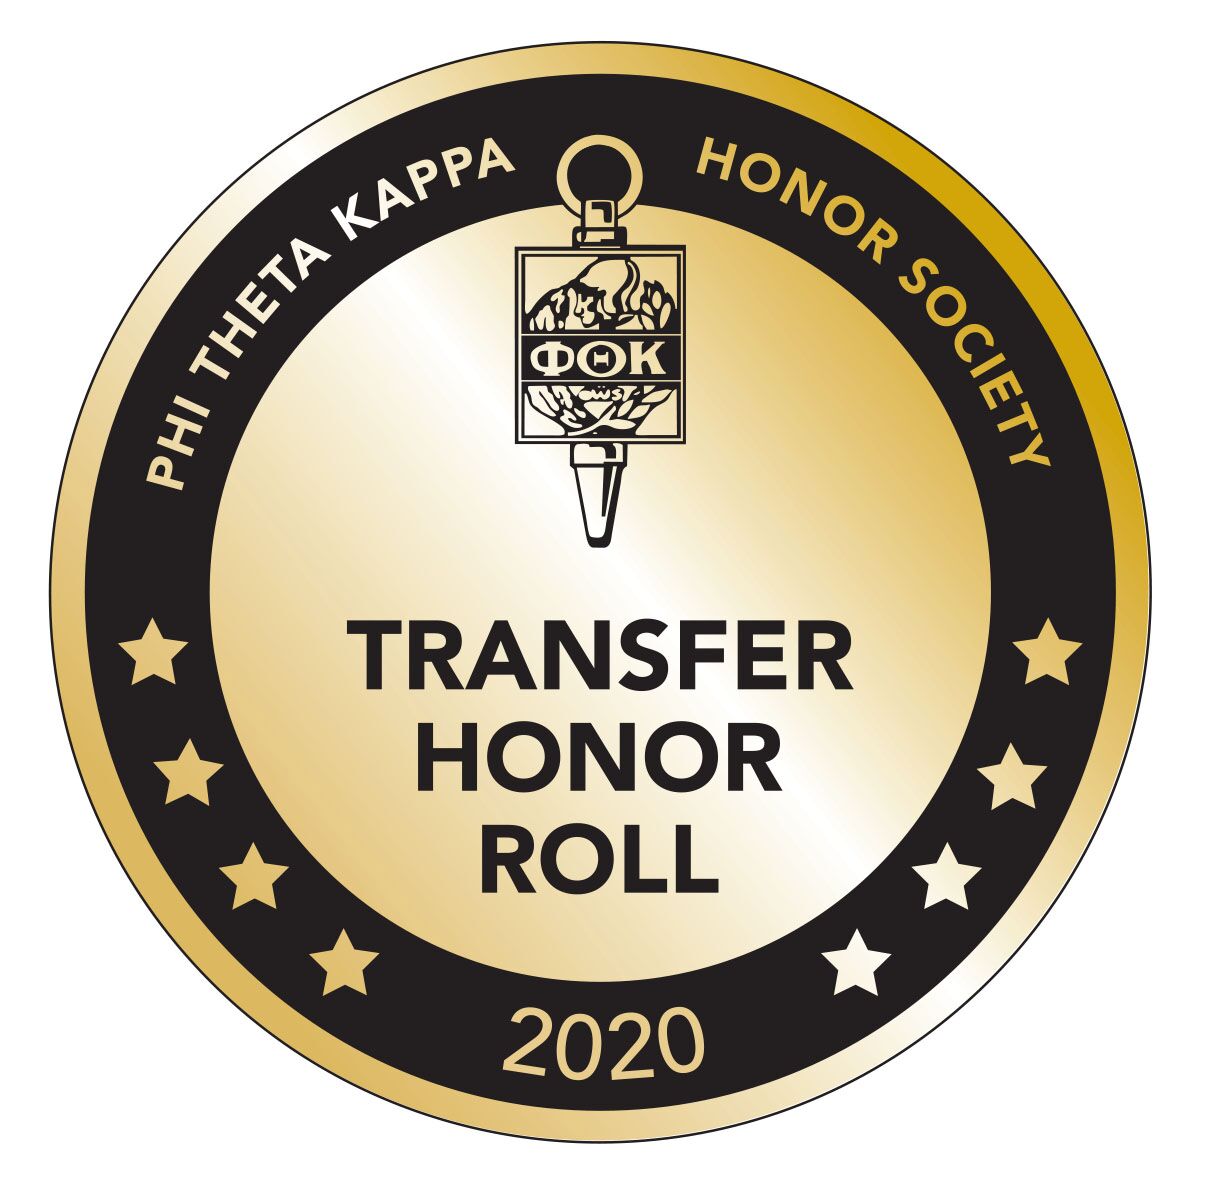 Phy Theta Kappa Honor Society logo